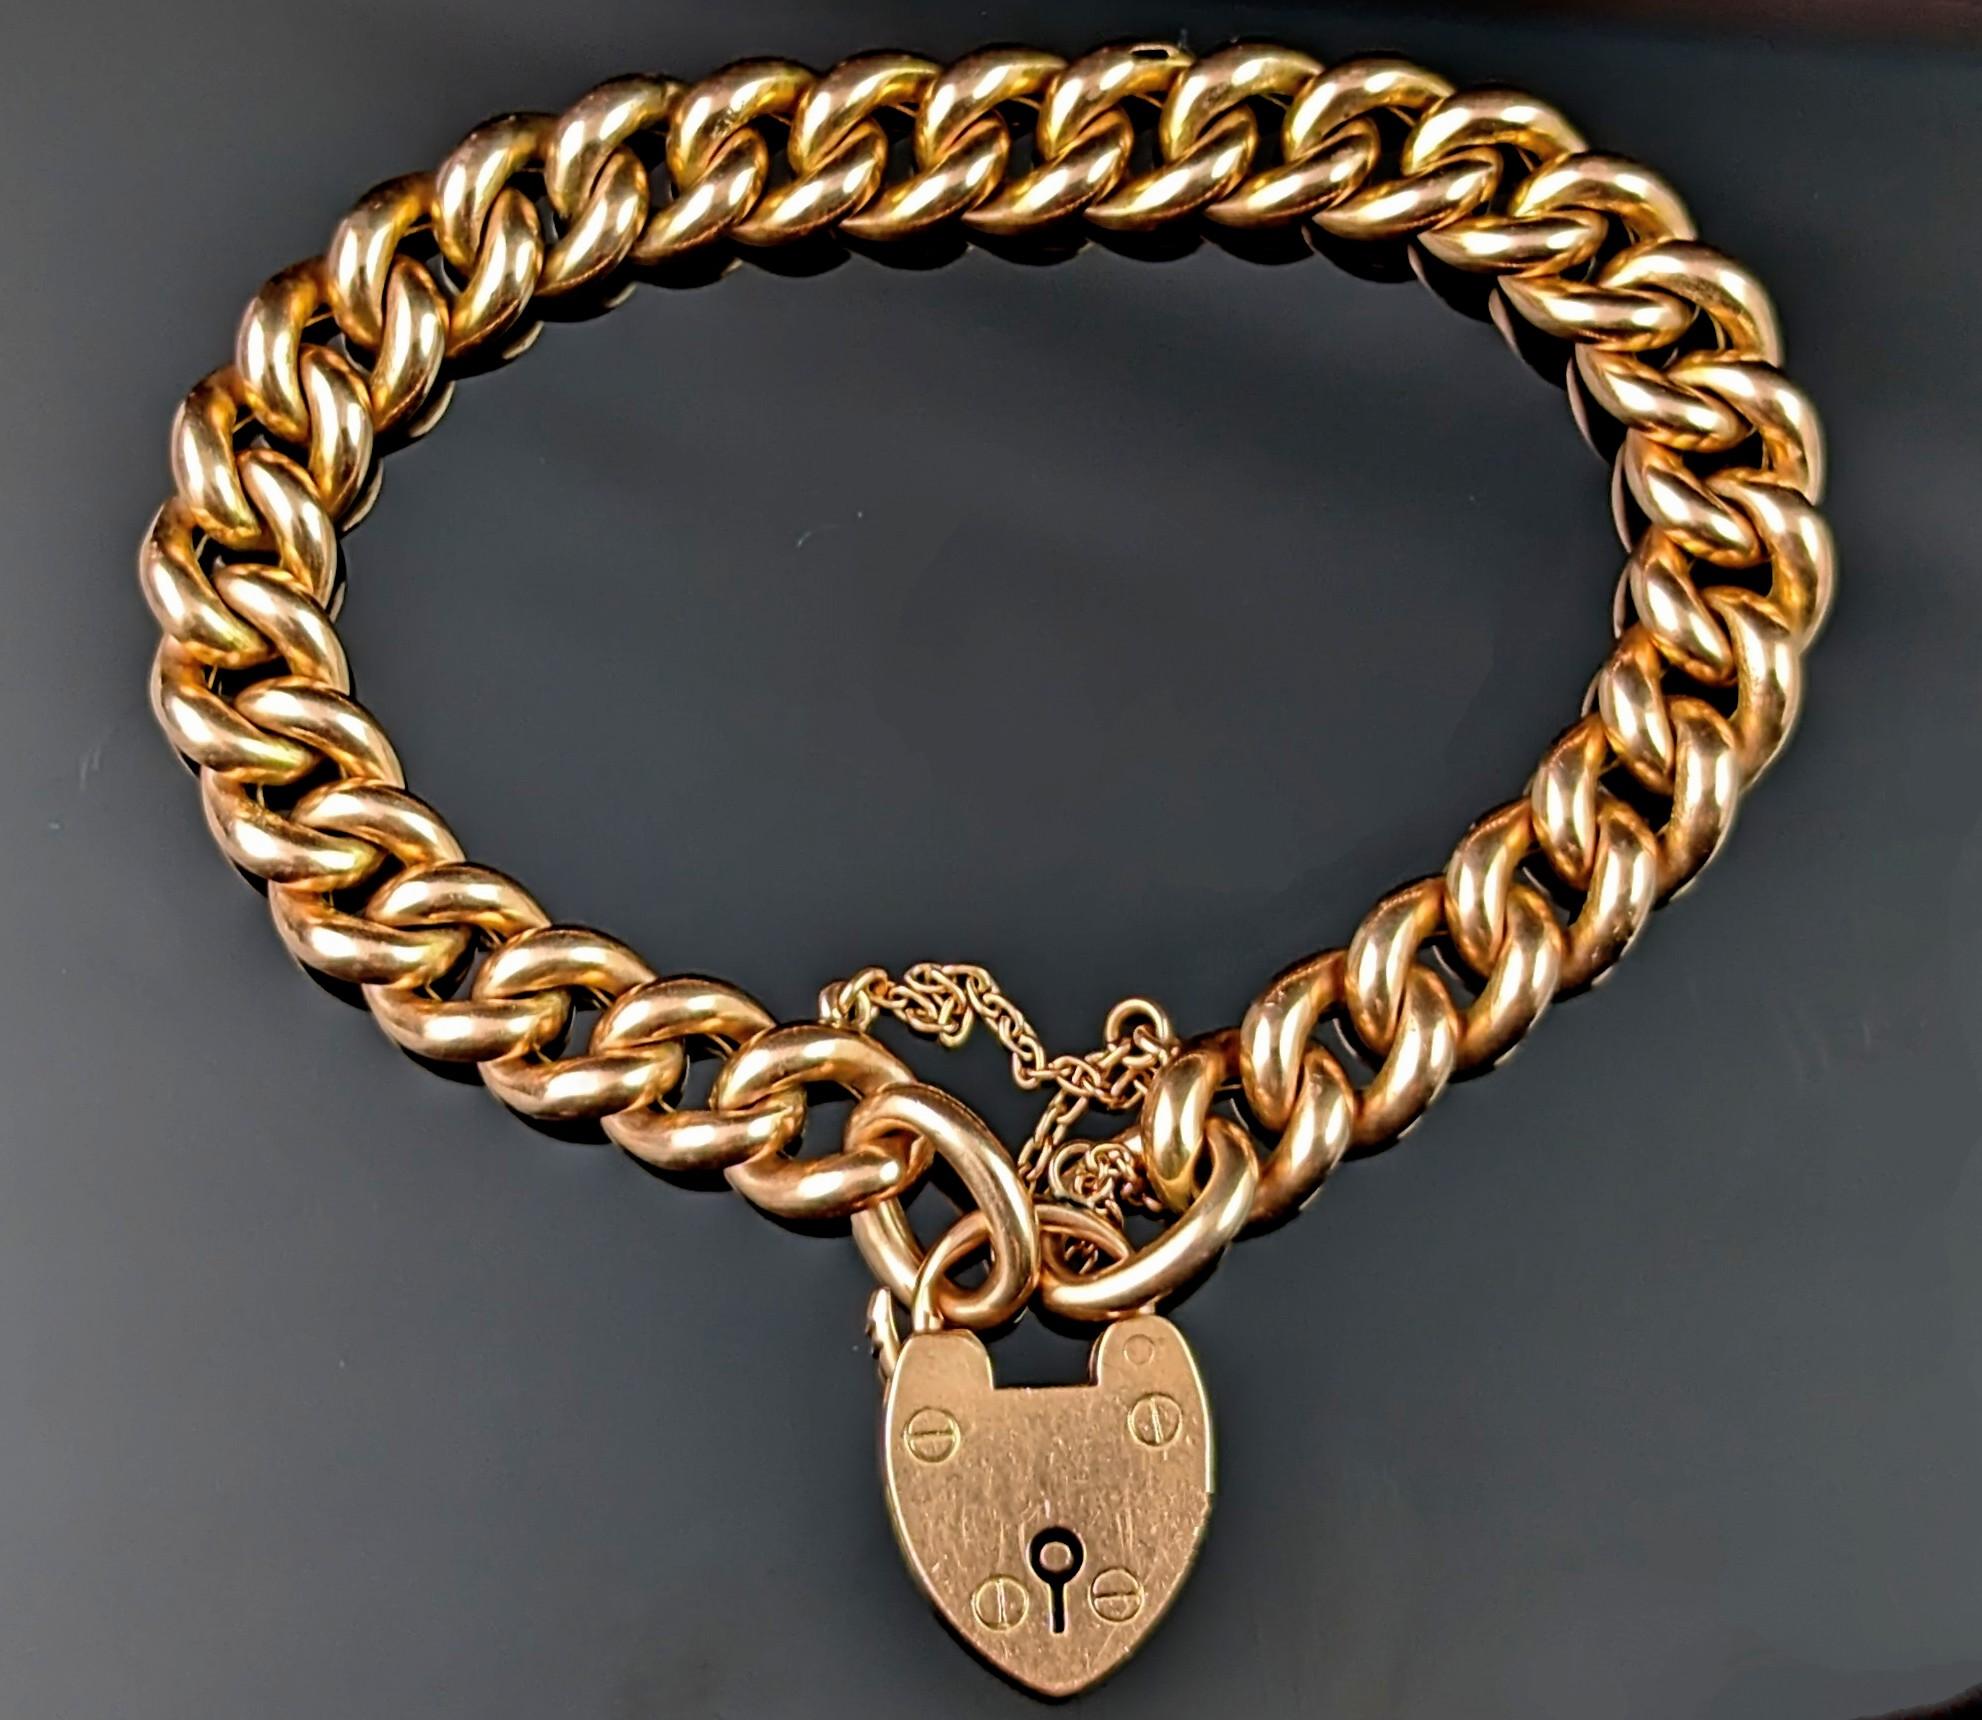 Mit einem antiken, spätviktorianischen Armband aus 9 Karat Gold wie diesem kann man nichts falsch machen.

Kräftige, goldfarbene Glieder mit polierter Oberfläche, die mühelos vom Tag zum Abend getragen werden können.

Das Gold hat sowohl gelbe als